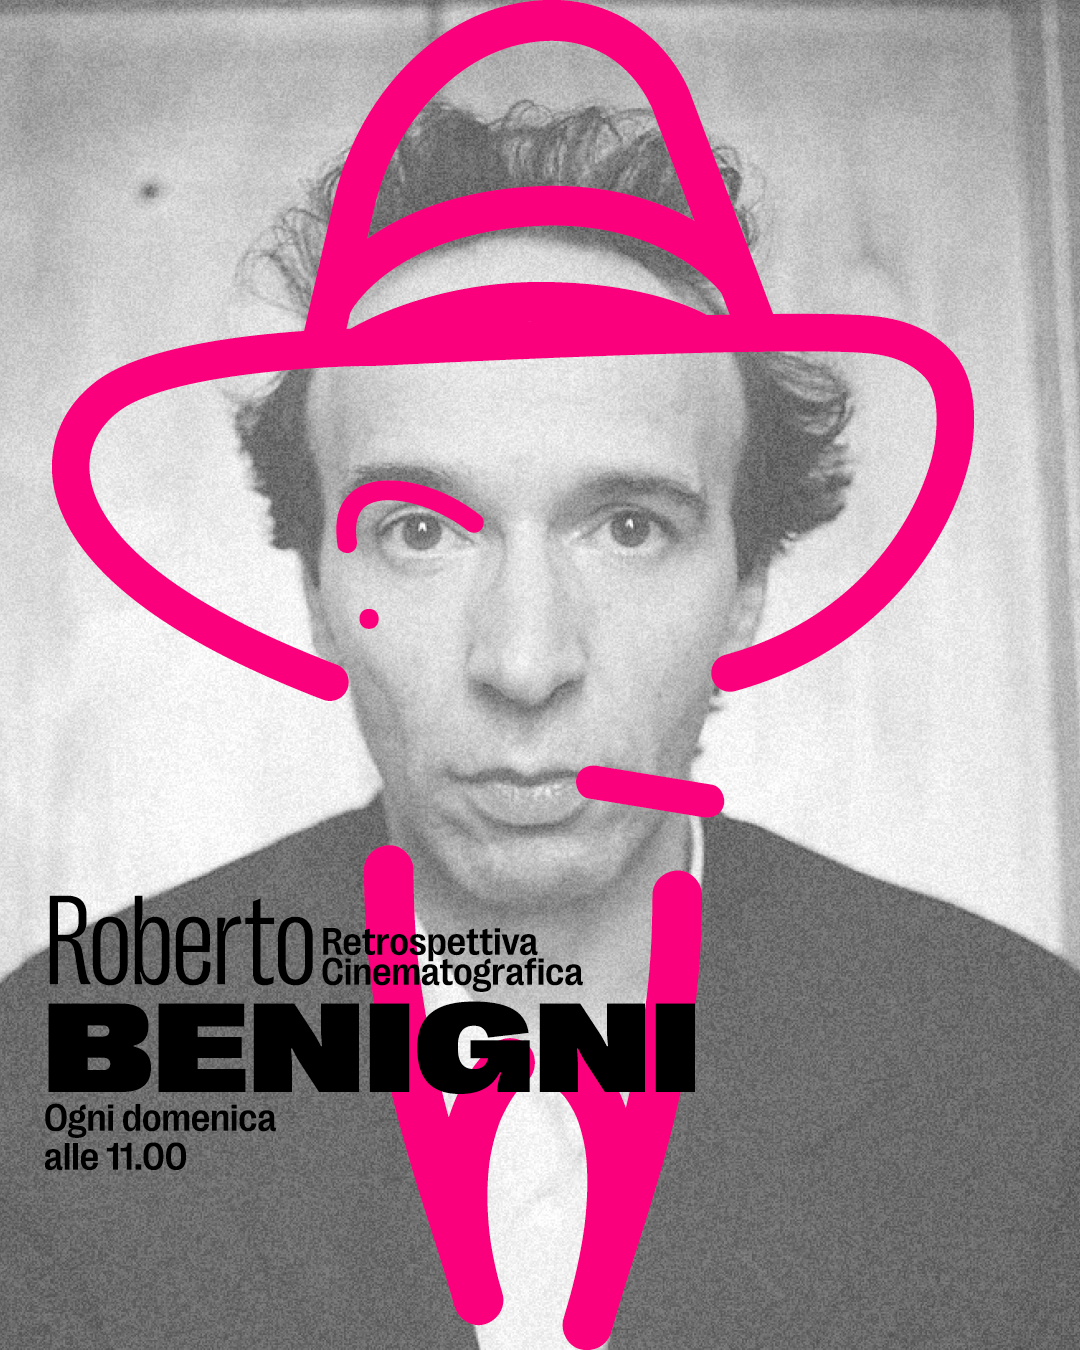 Retrospettiva Roberto Benigni